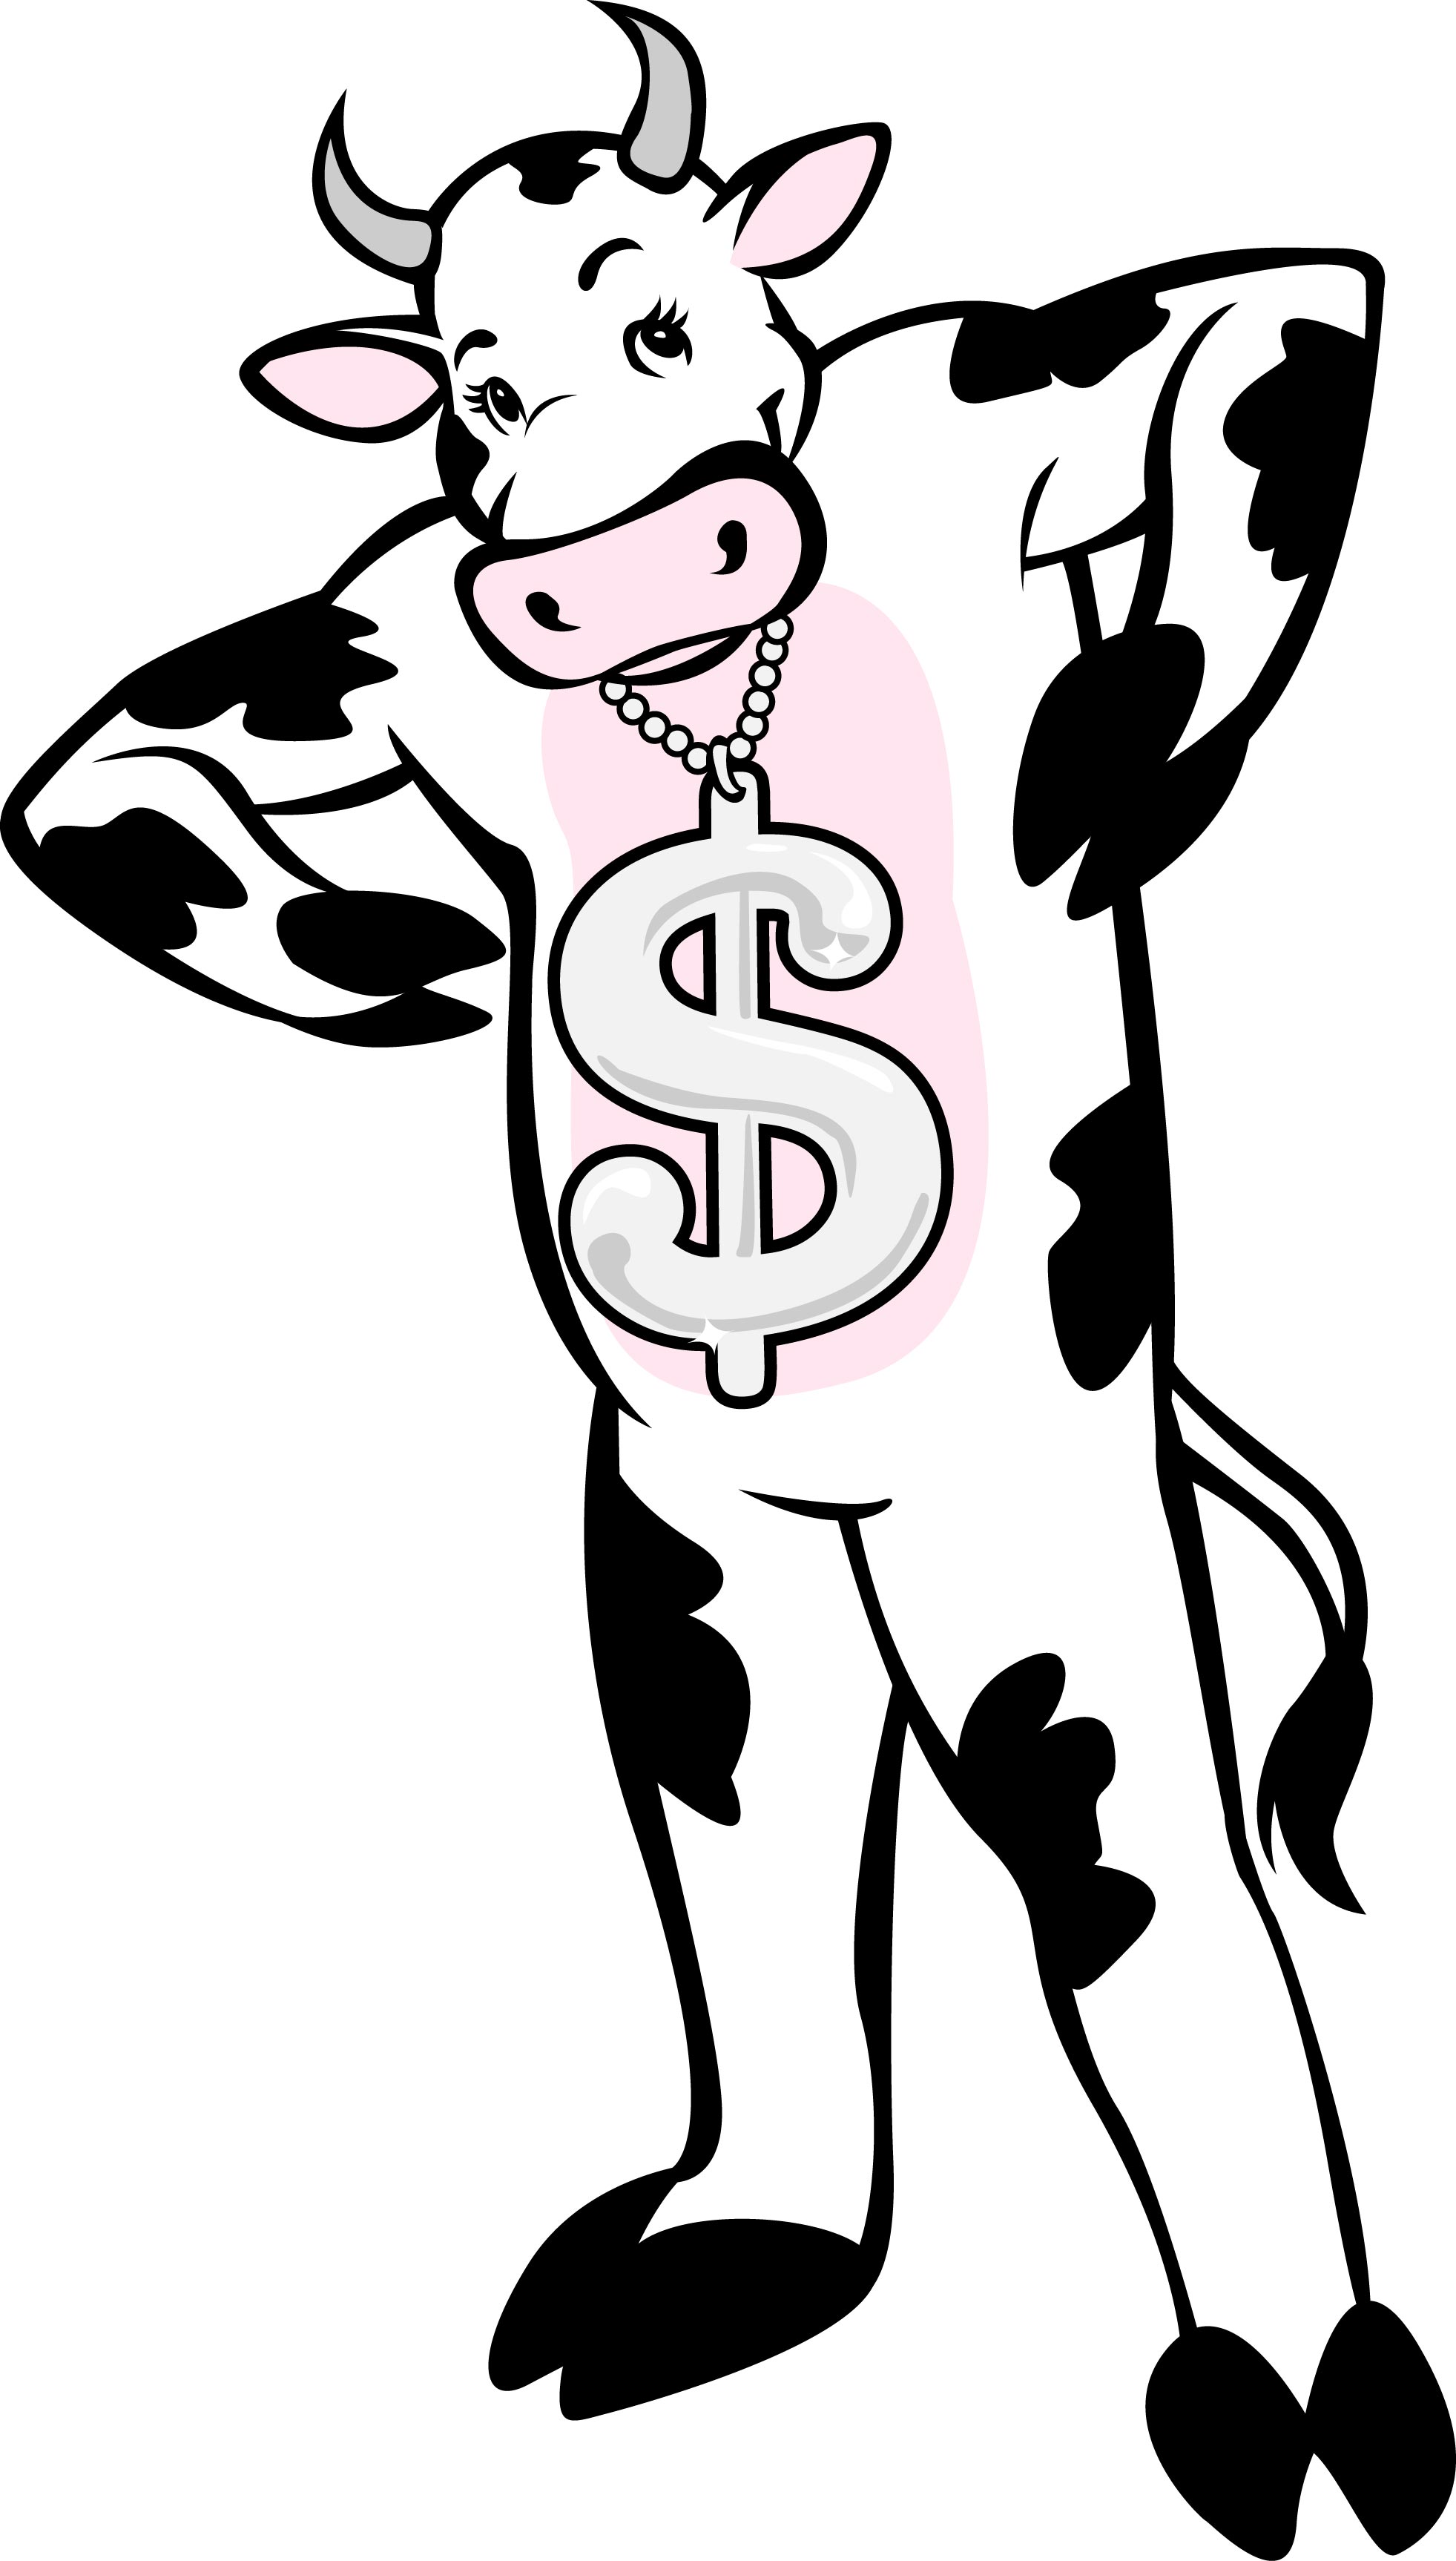 The Cash Cow